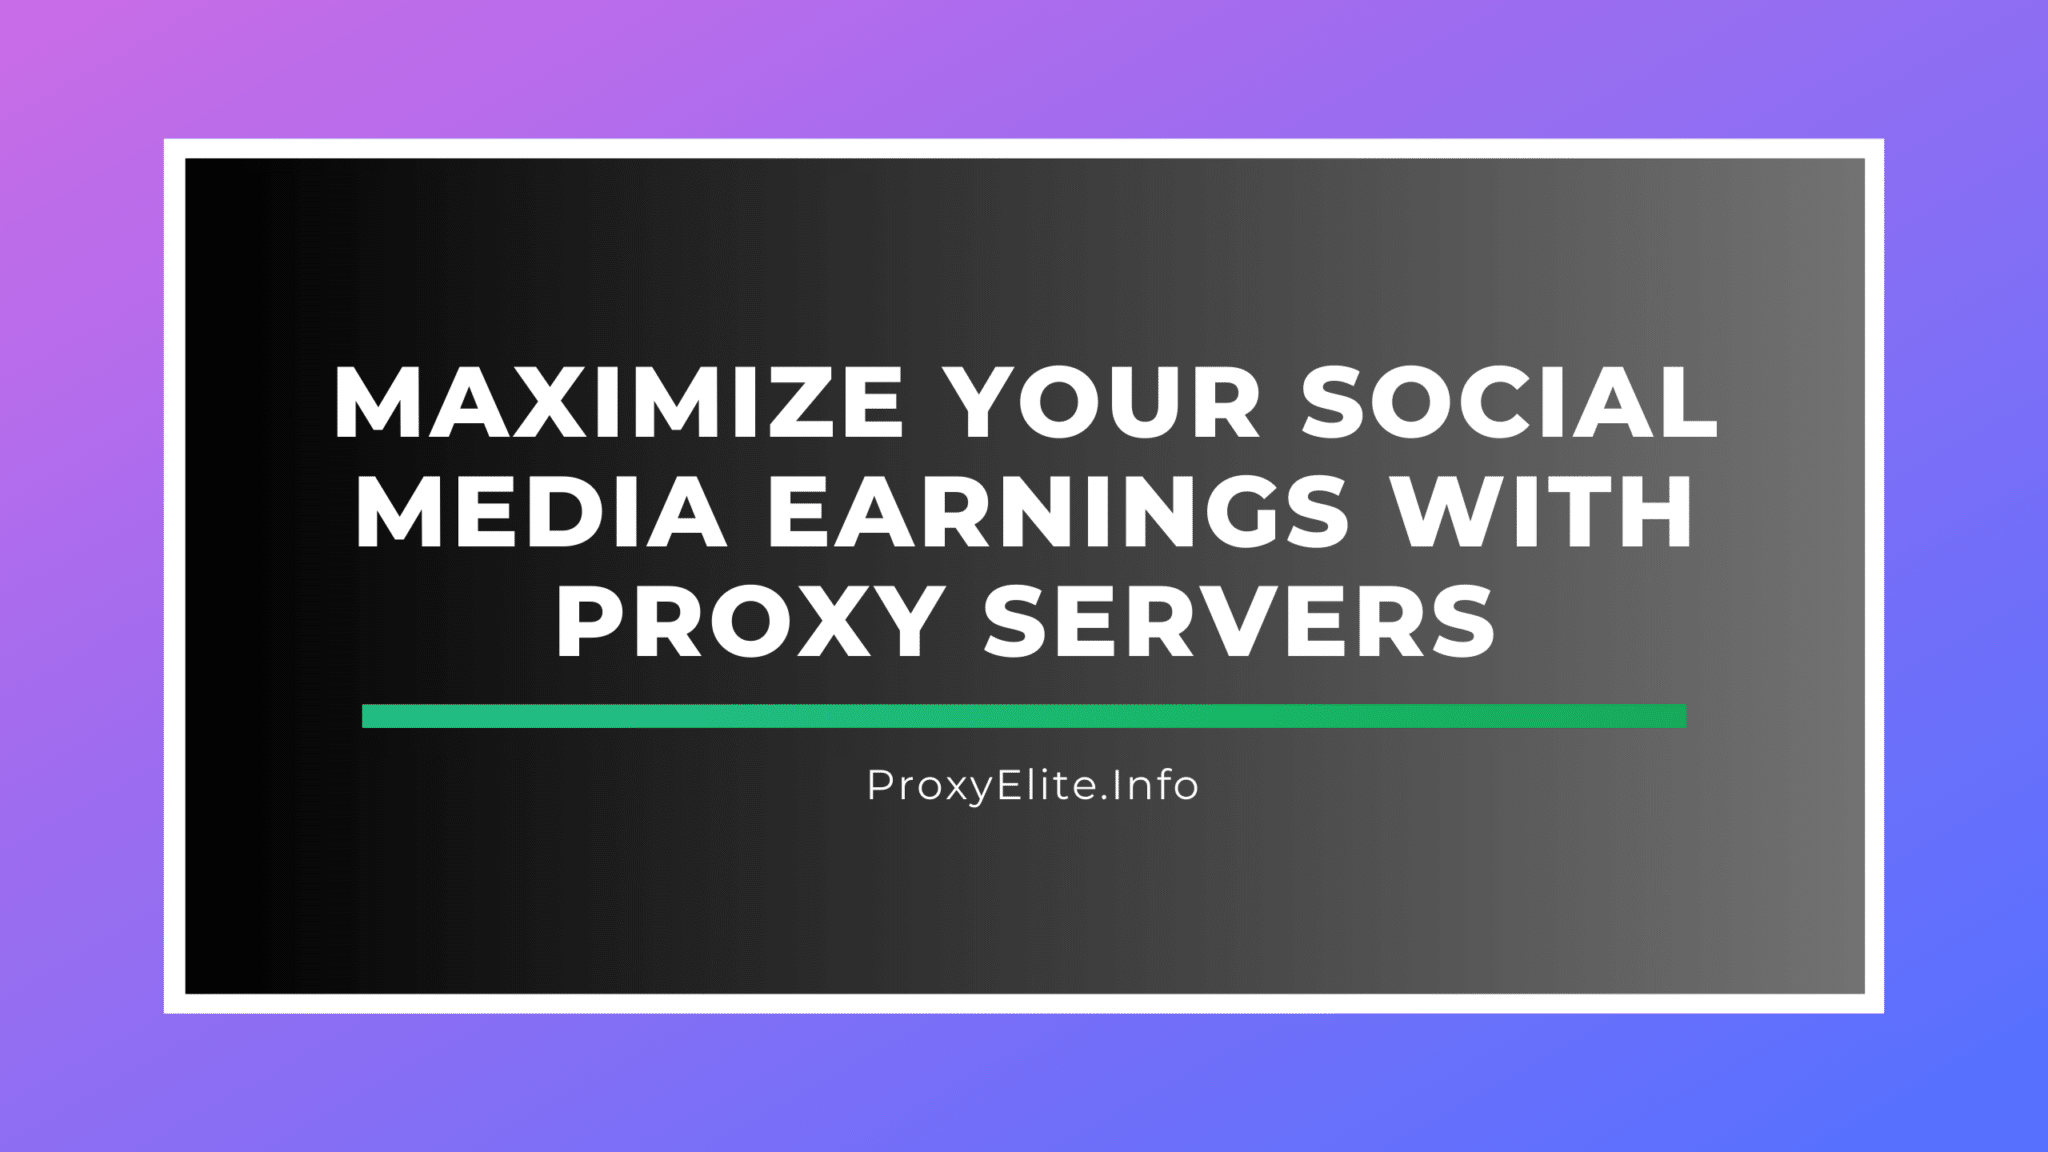 Увеличьте свой доход в социальных сетях с помощью прокси-серверов